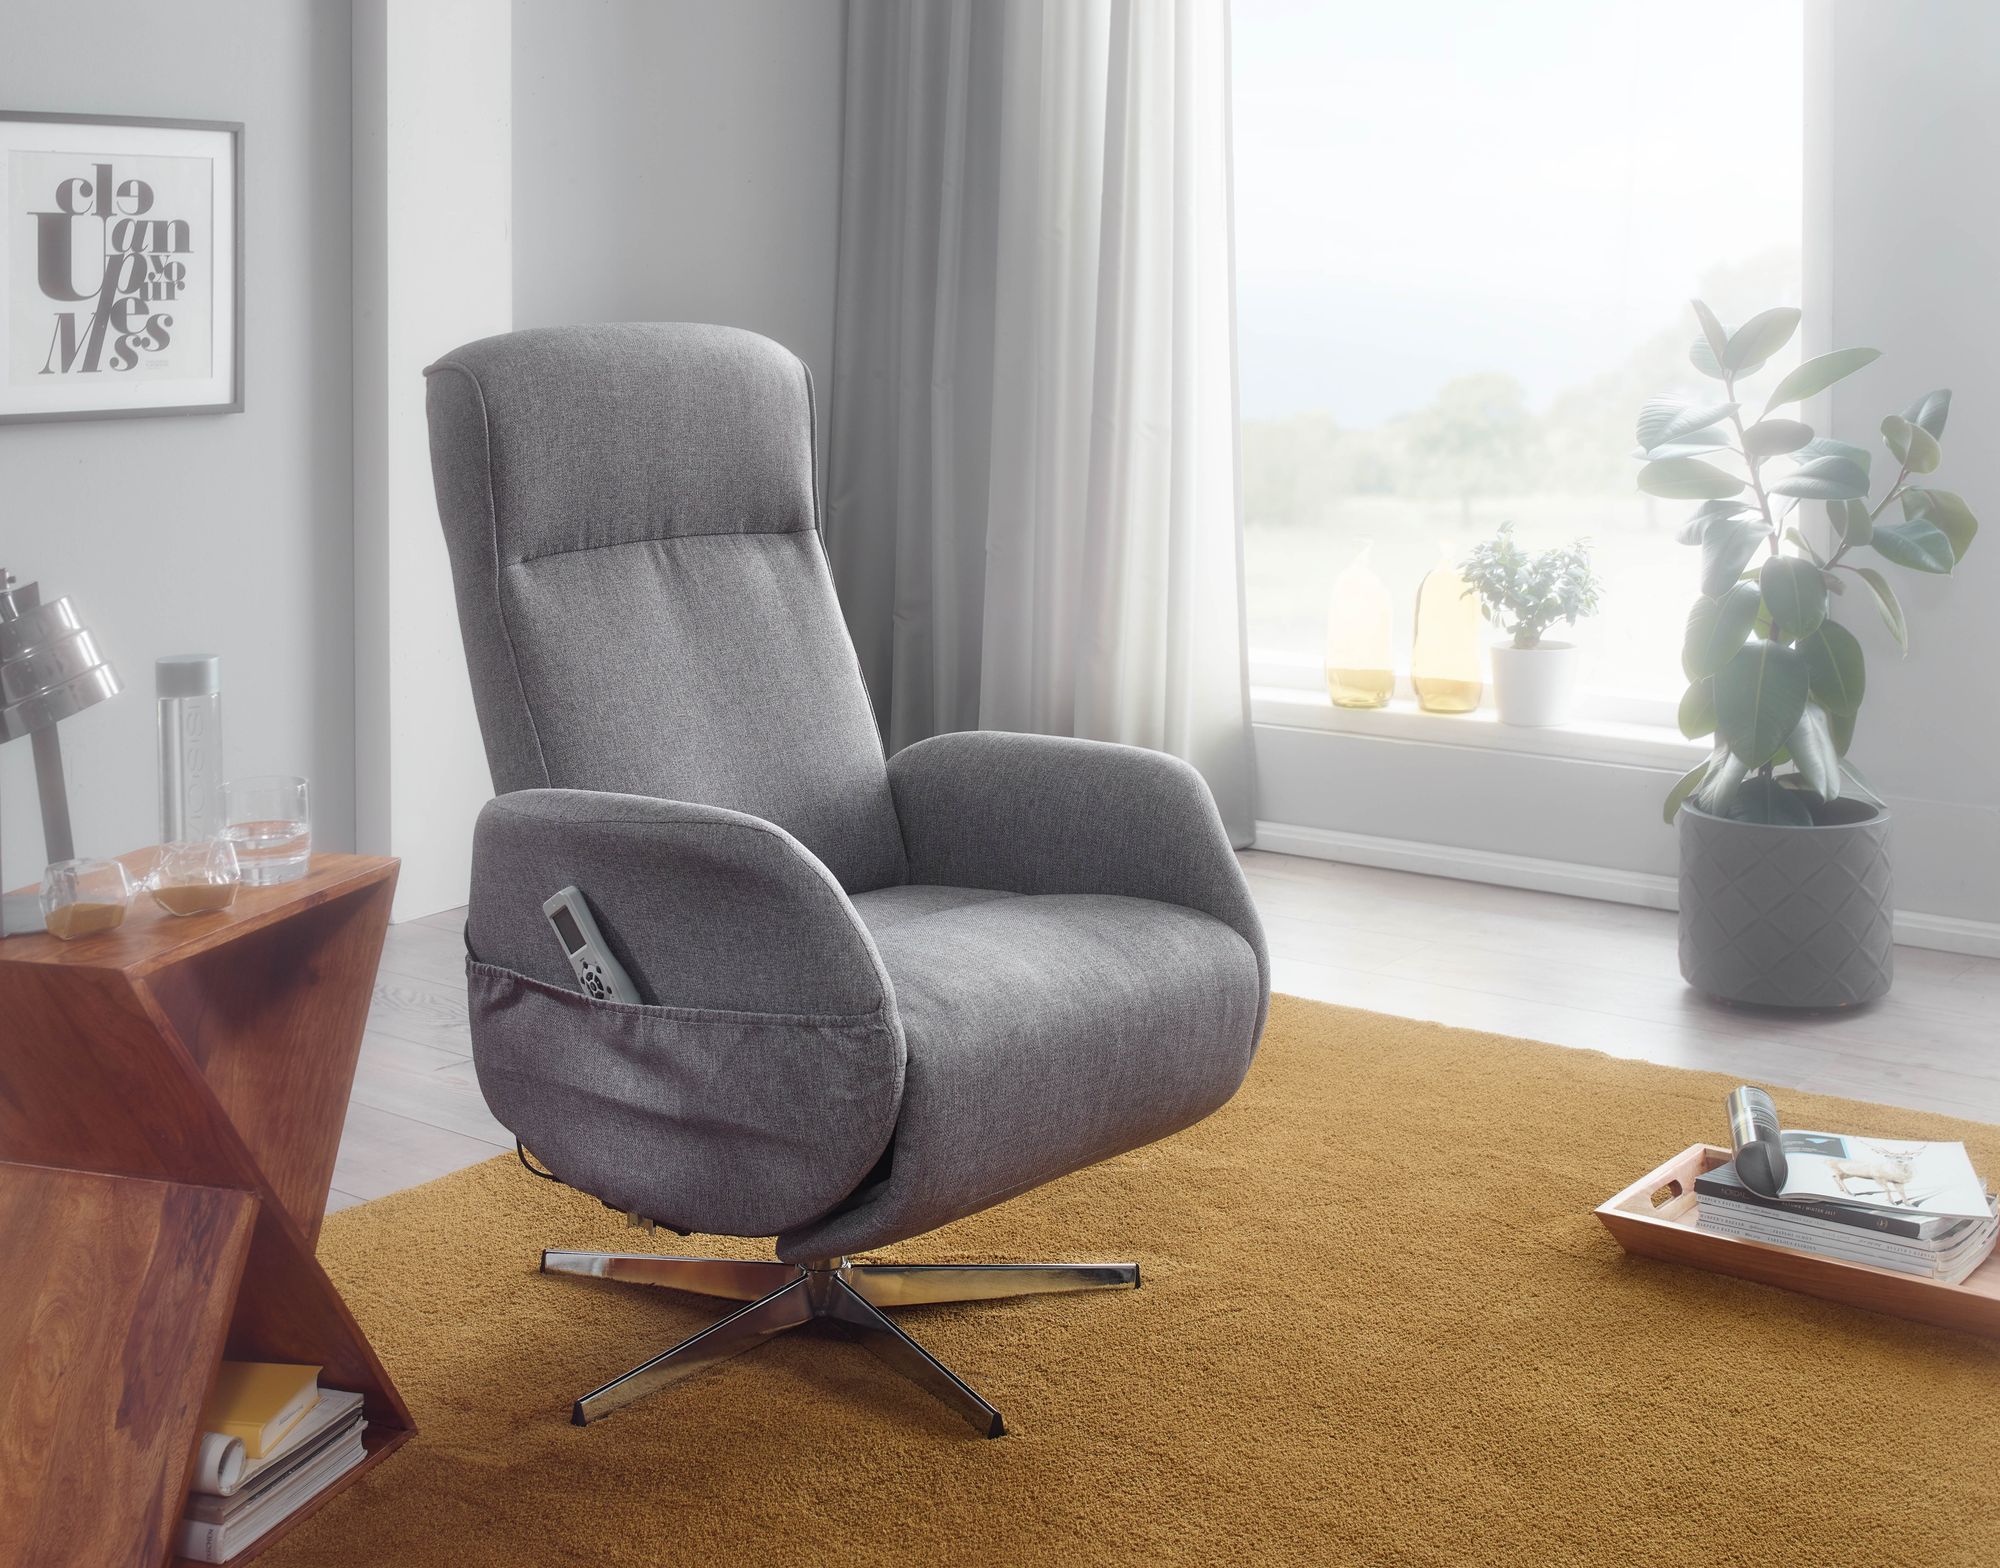 Keelholte controller Een centrale tool die een belangrijke rol speelt betaalbare luxe relax fauteuils kopen? | Aktie wonen.nl